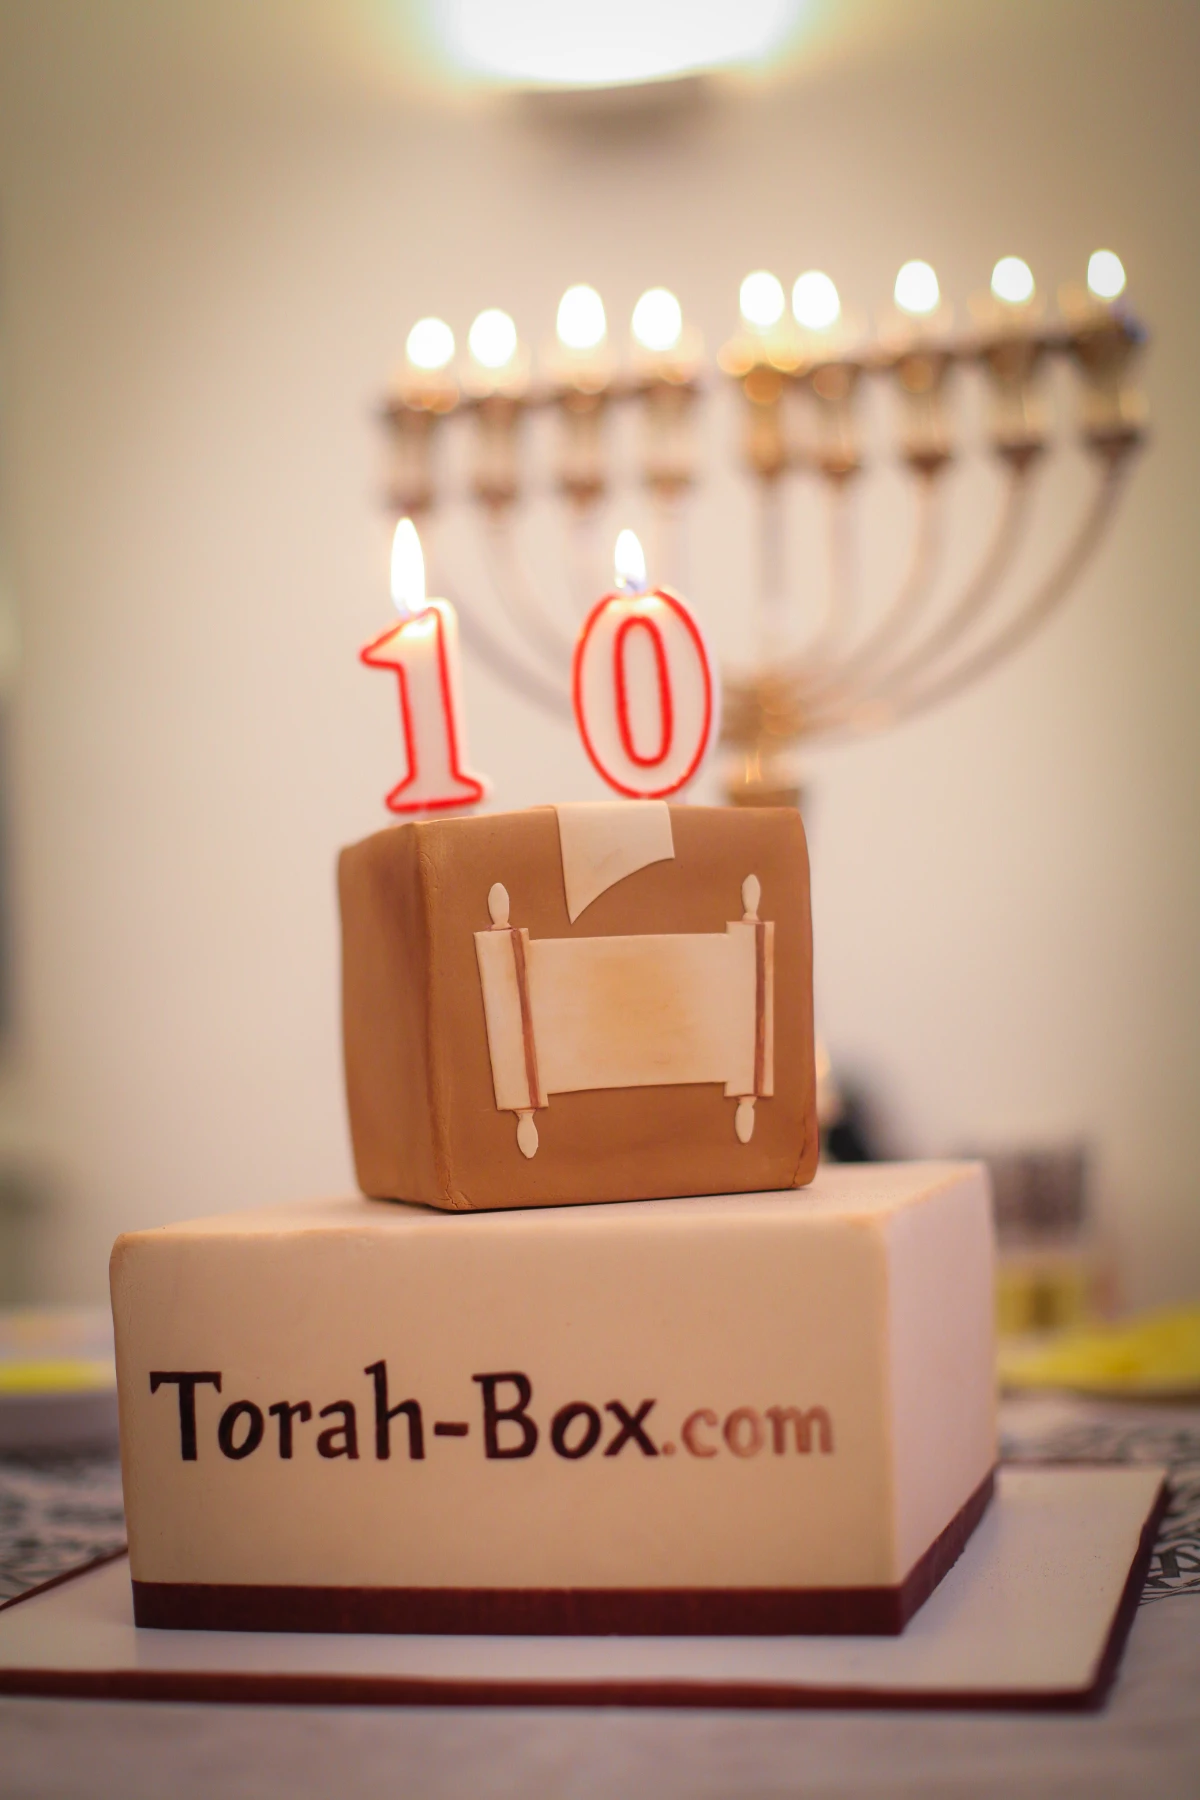 Torah-Box : la bougie des 10 ans !